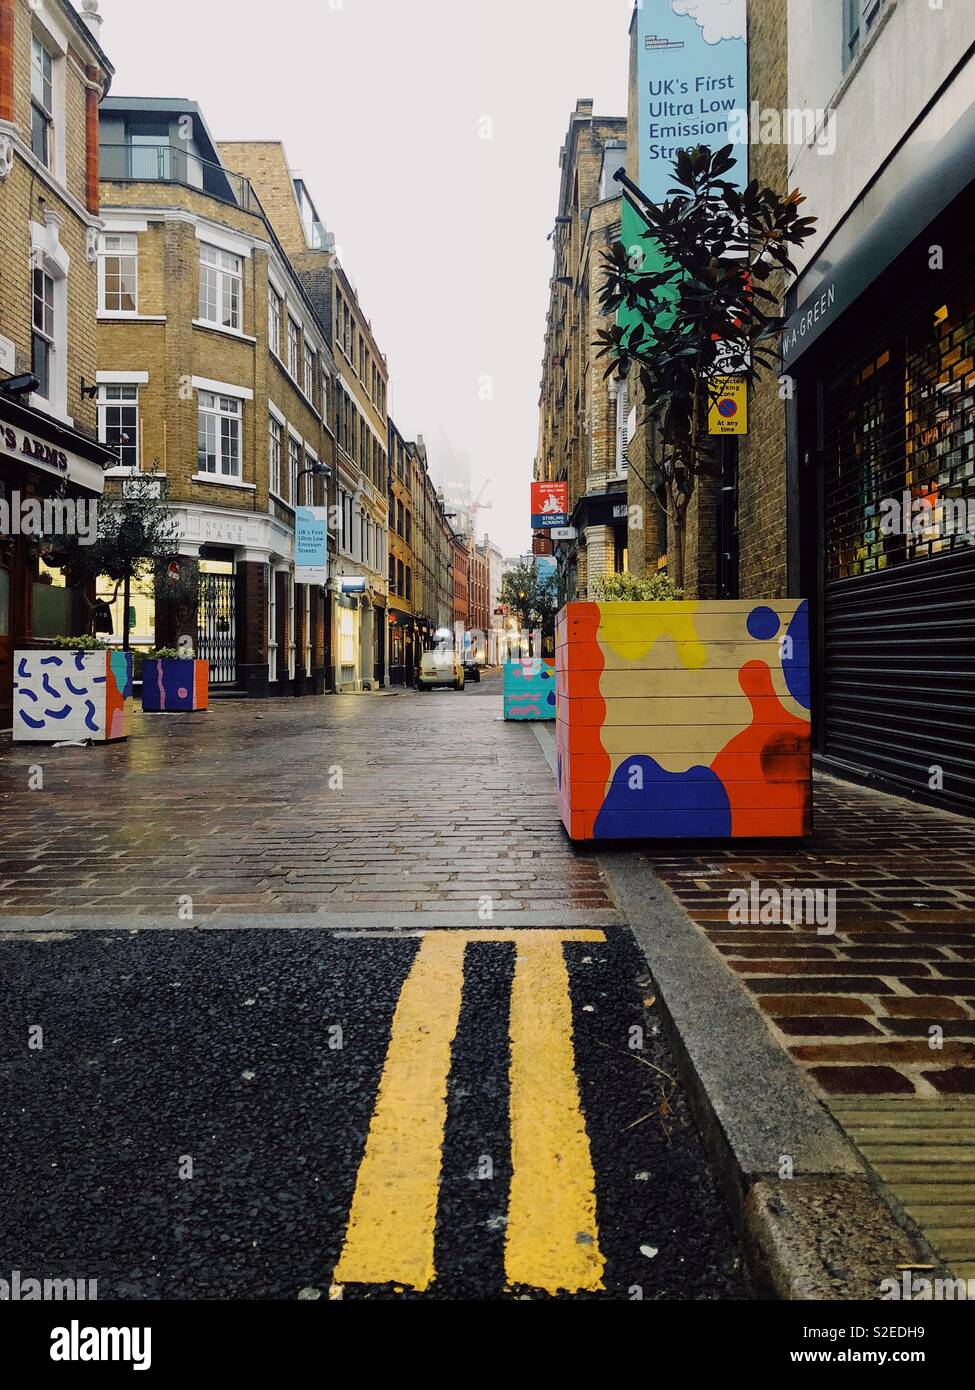 Charlotte Straße in Shoreditch, London, England. Bunte Pflanzmaschinen von Street Artists. UKs erste low emission Straße. Doppelten gelben Linien sind sichtbar auf der Asphaltstraße Stockfoto